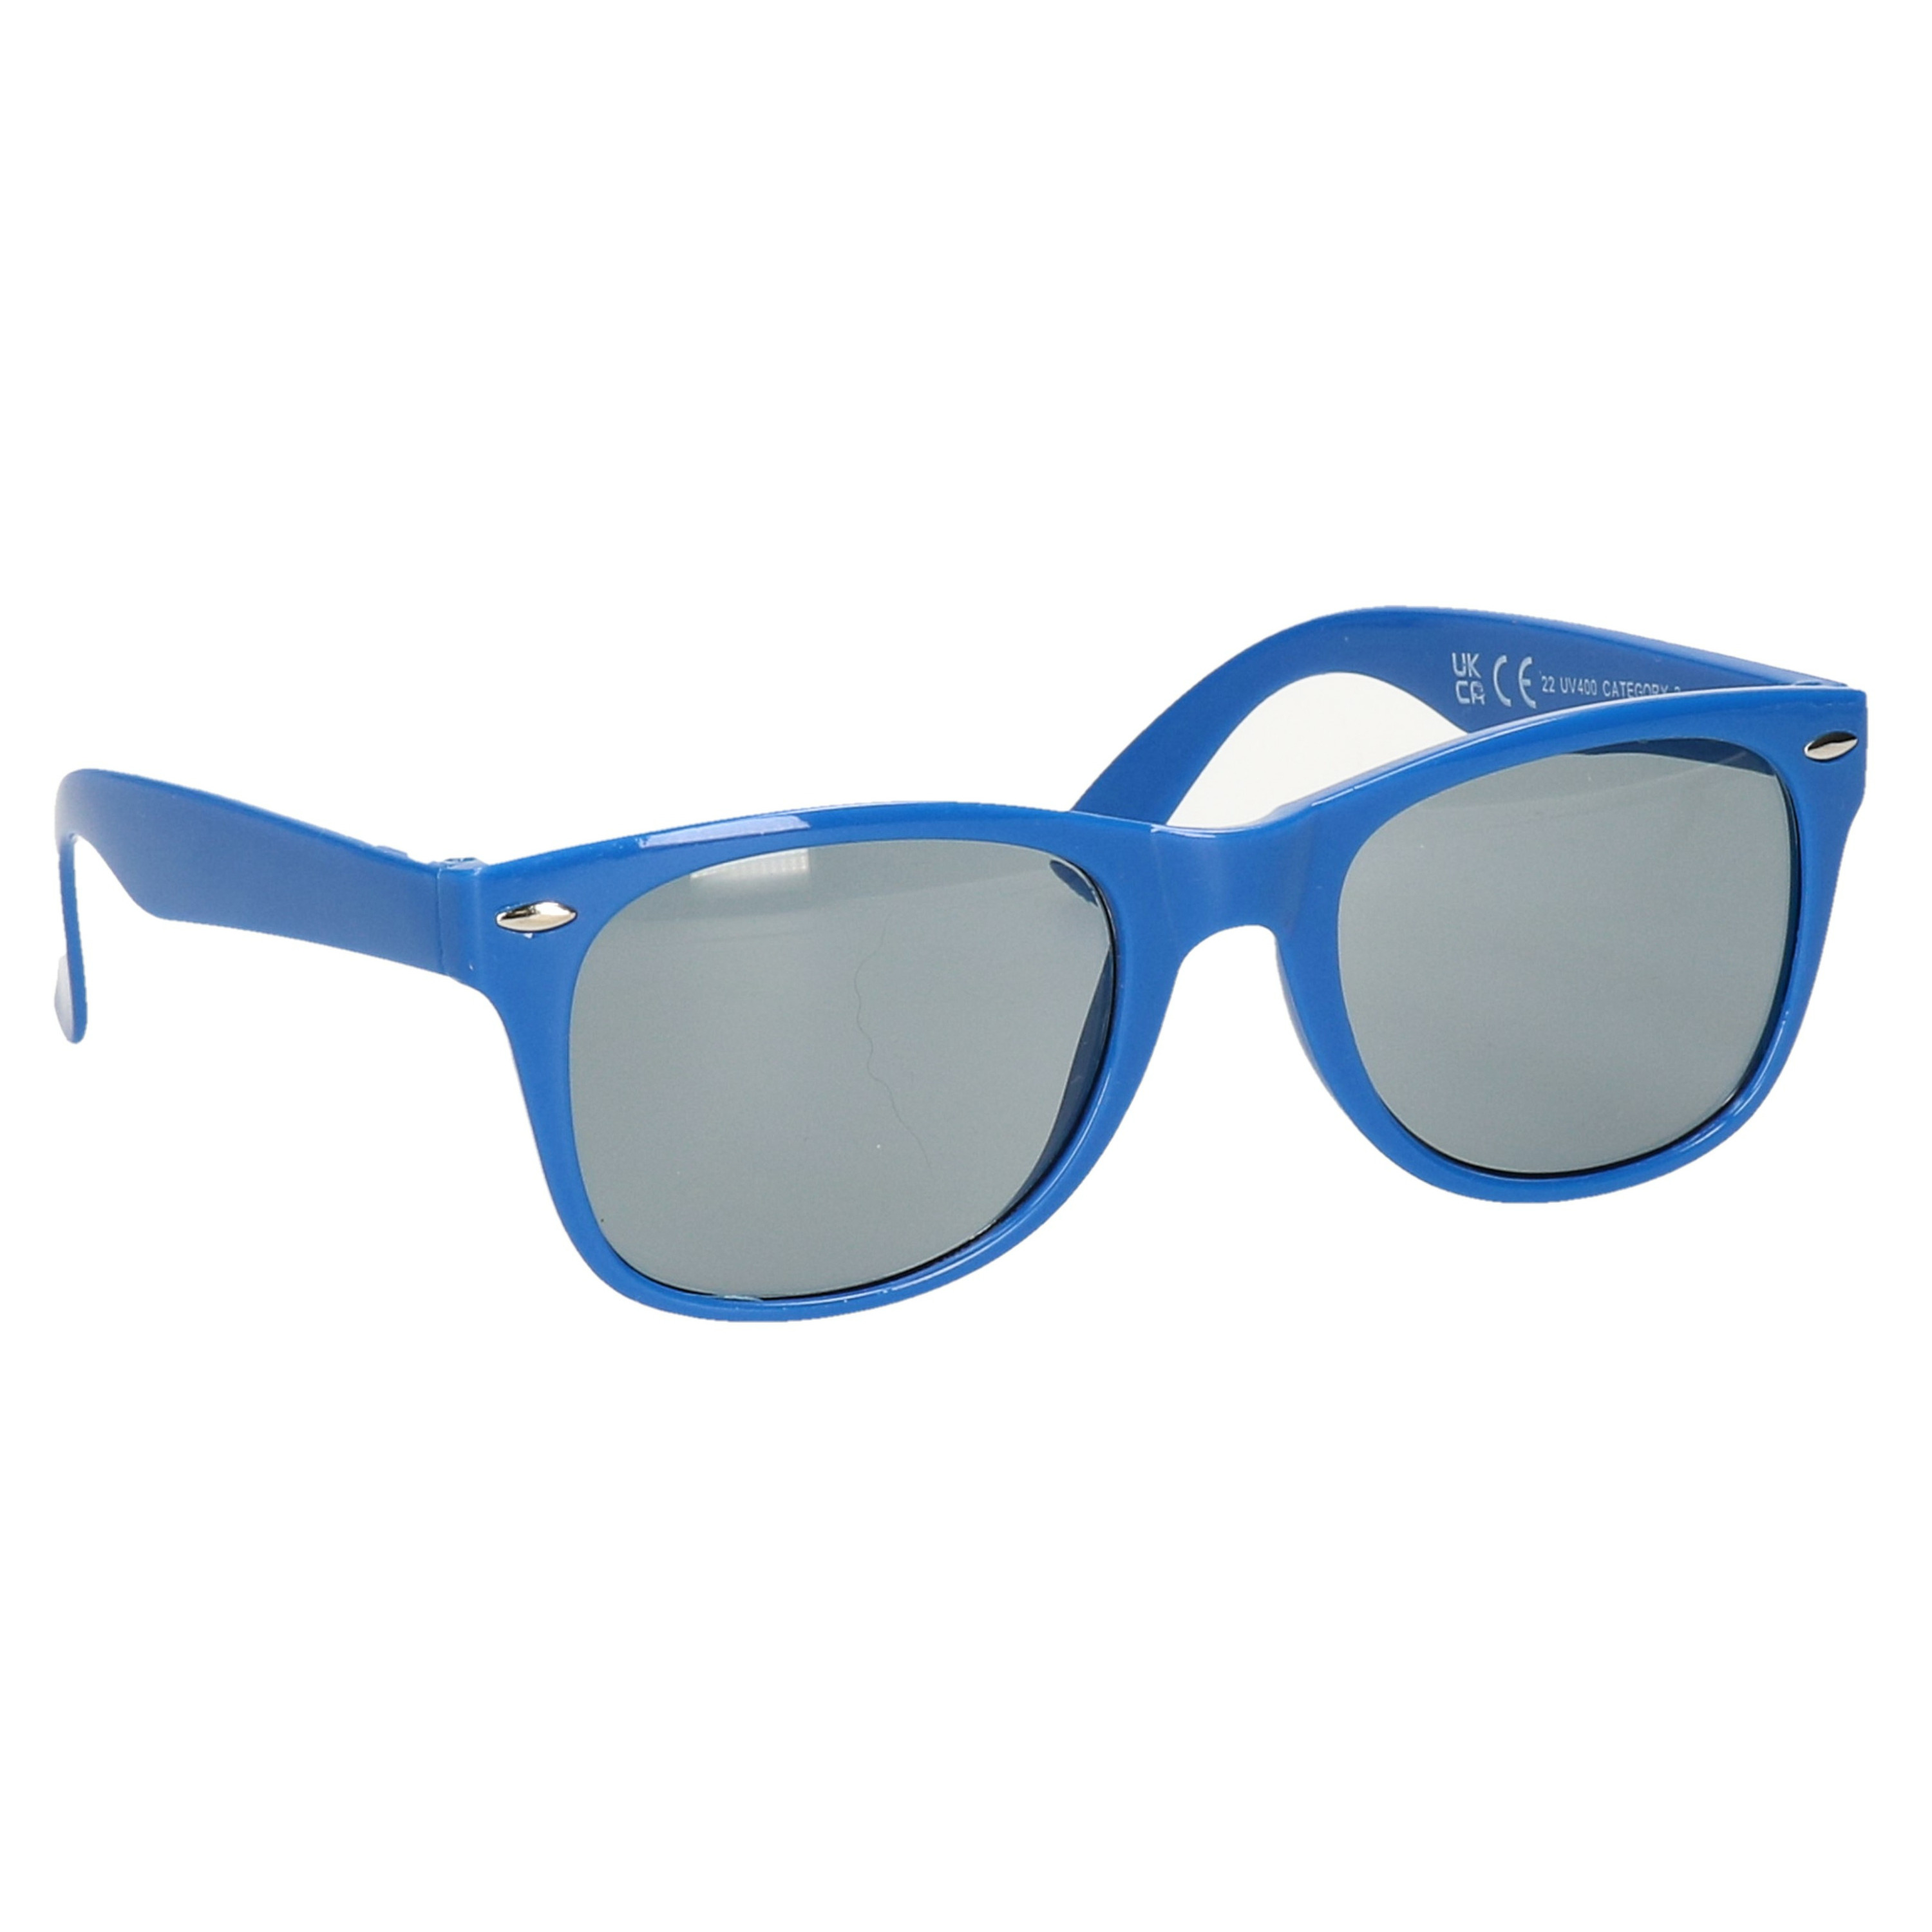 Hippe feest zonnebril met blauw montuur